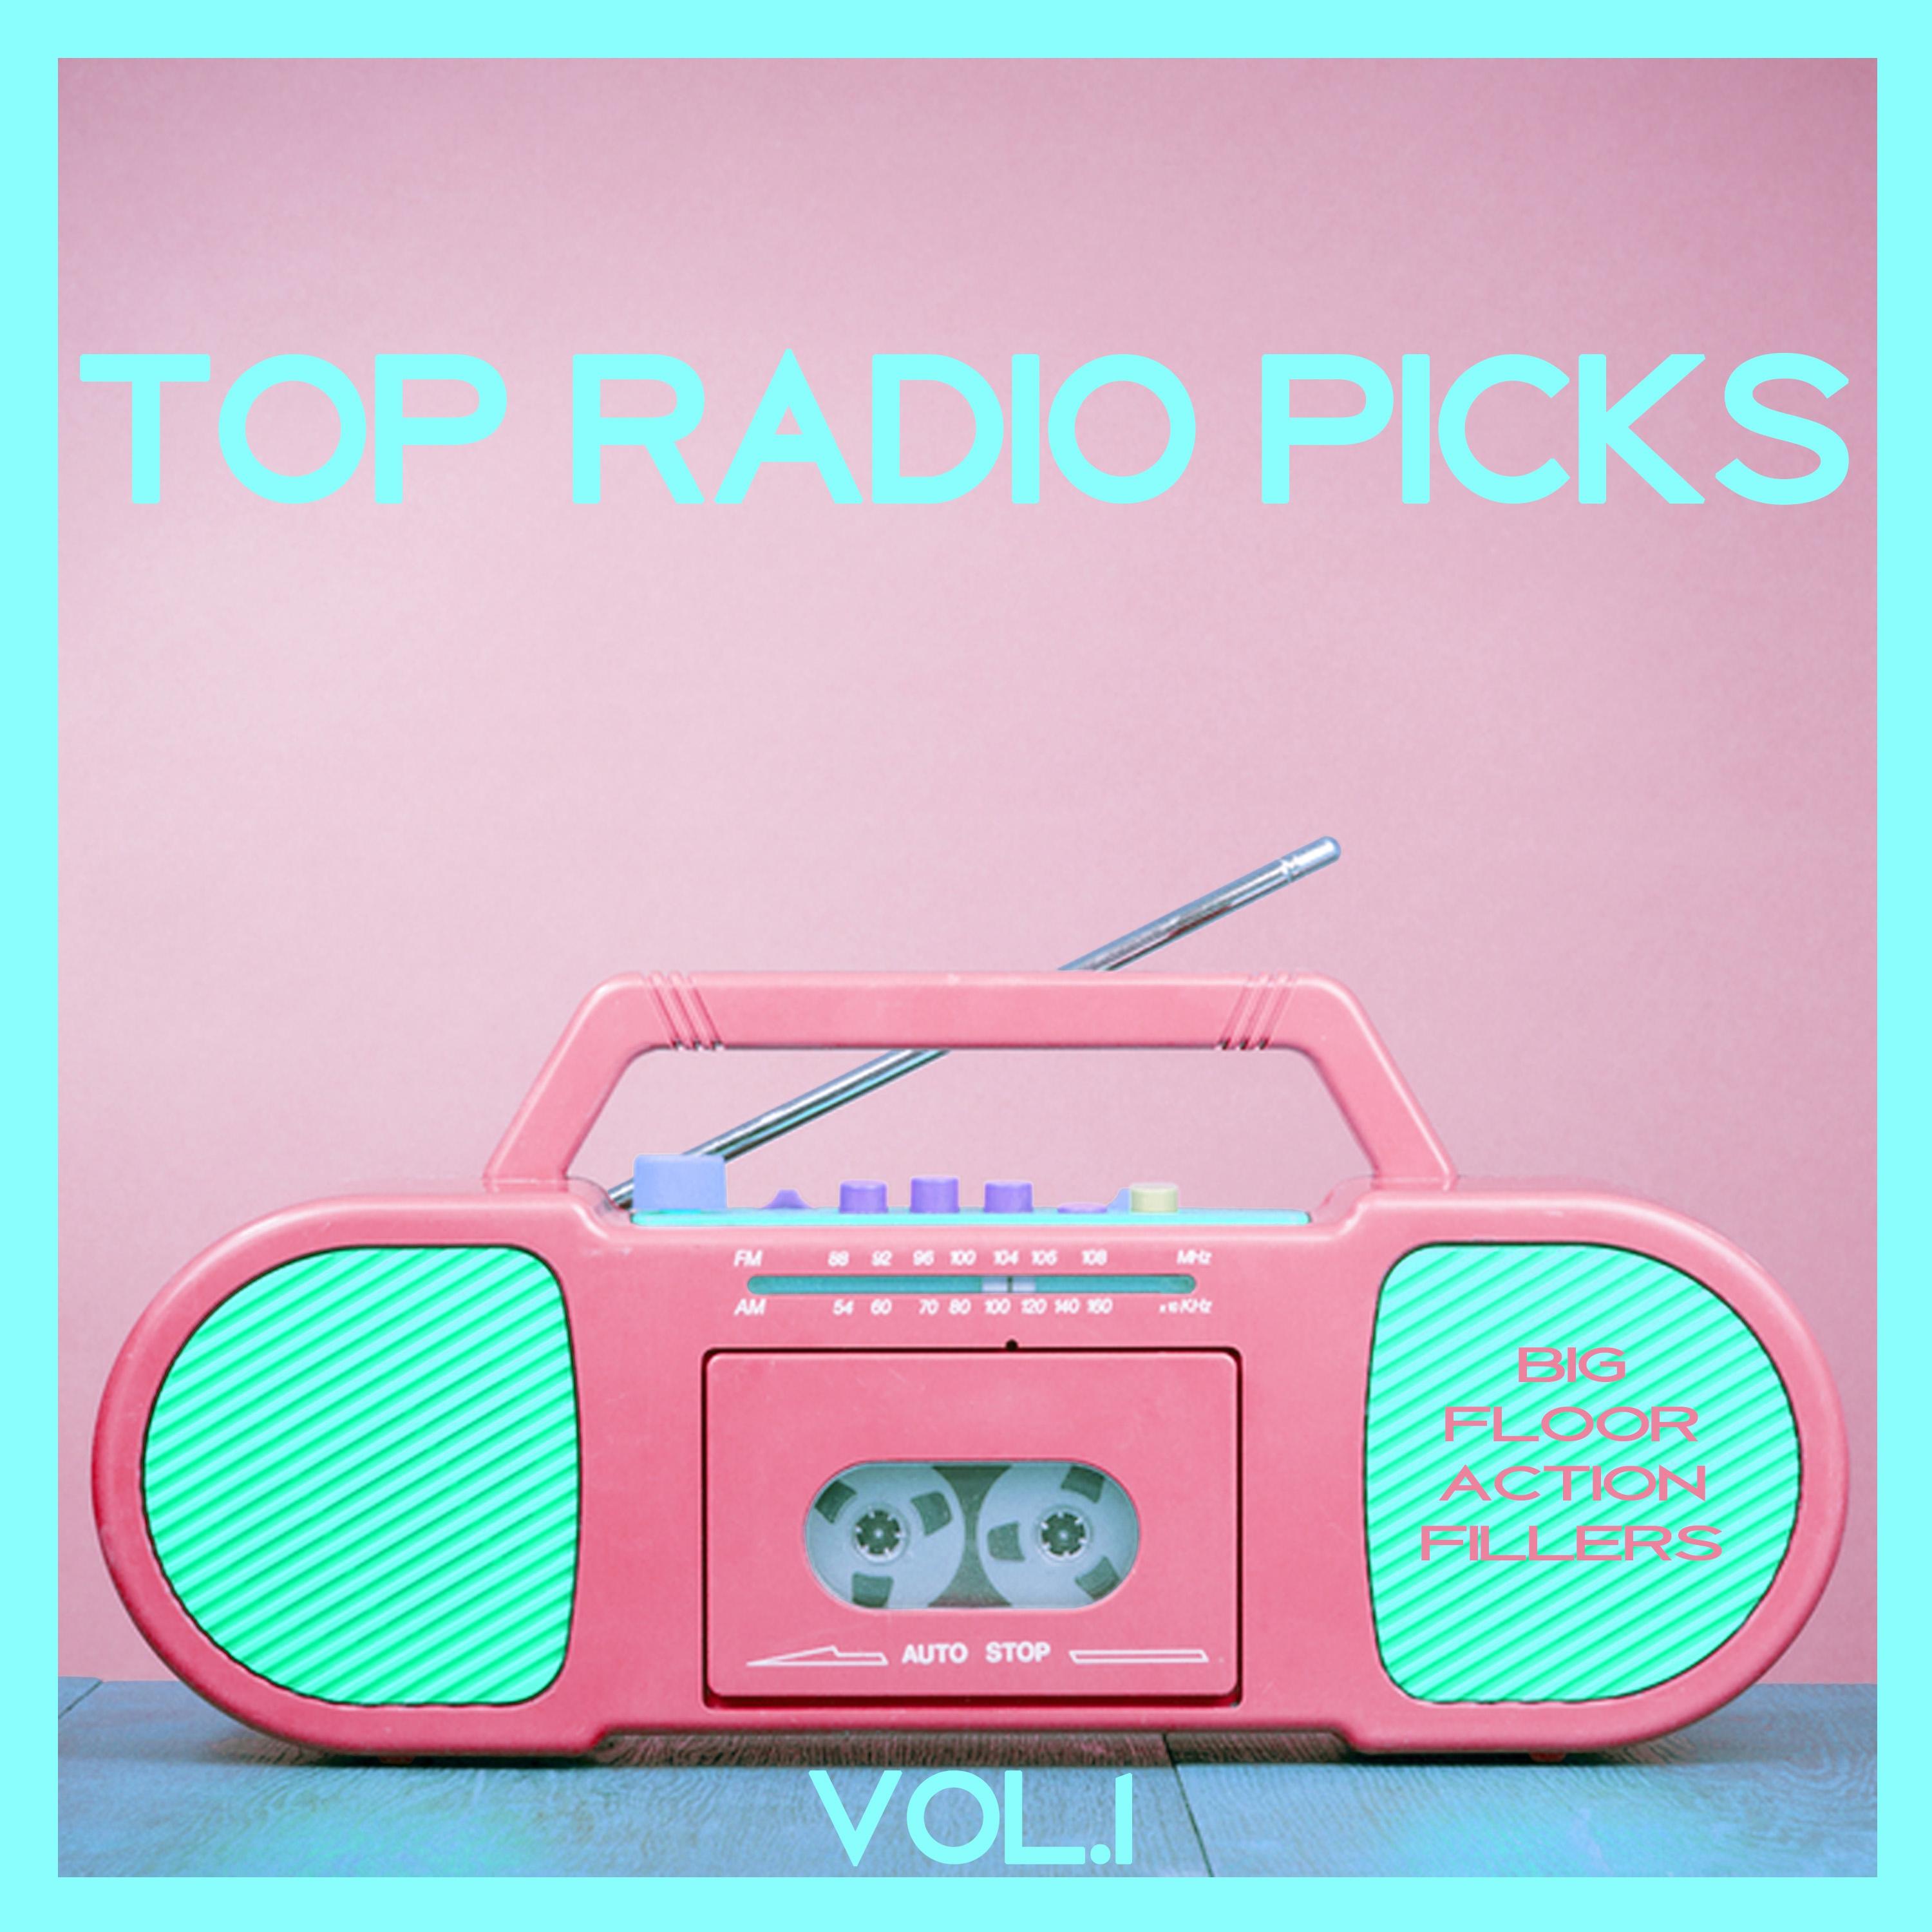 Top Radio Picks, Vol. 1 - Big Floor Action Fillers